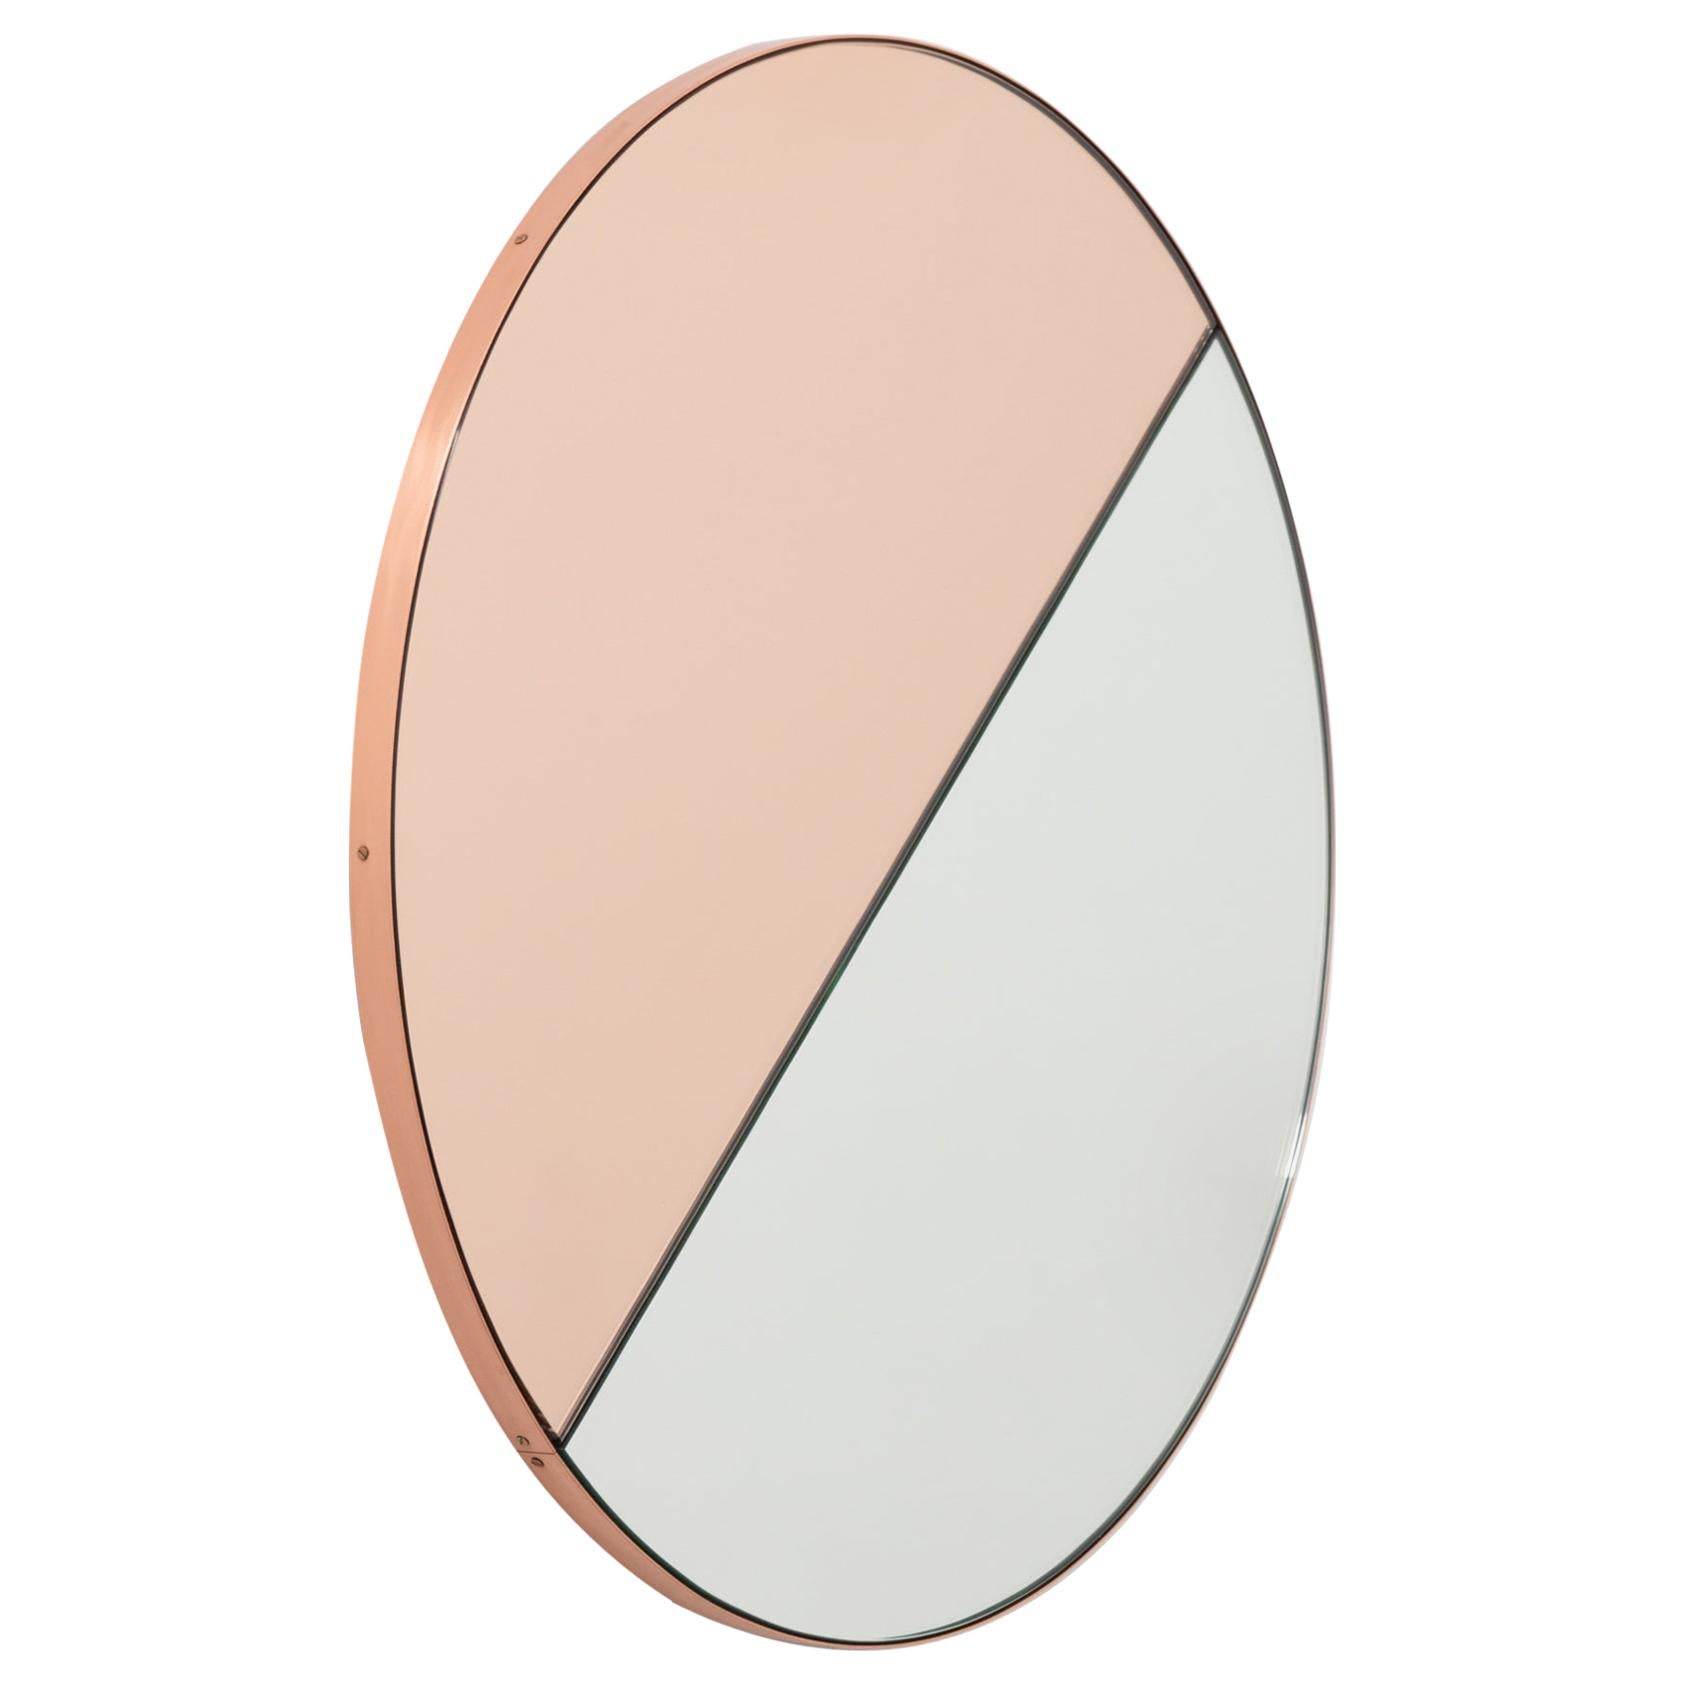 Miroir rond minimaliste Orbis Dualis teinté or rose mélangé, cadre en cuivre, régulier en vente